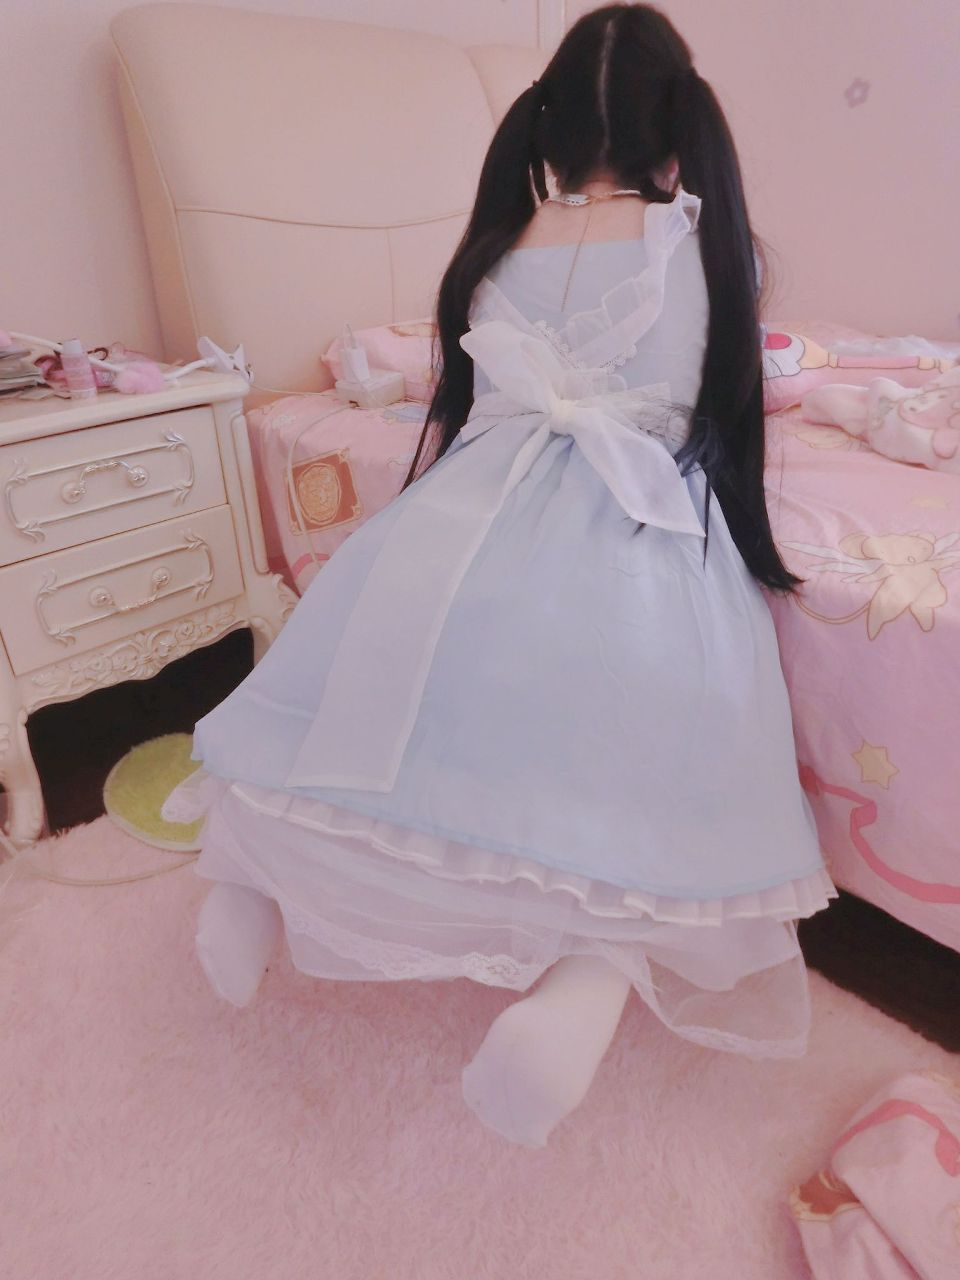 工口小妖精 萝莉女仆 - Loli princess girl cosplay - (28P)